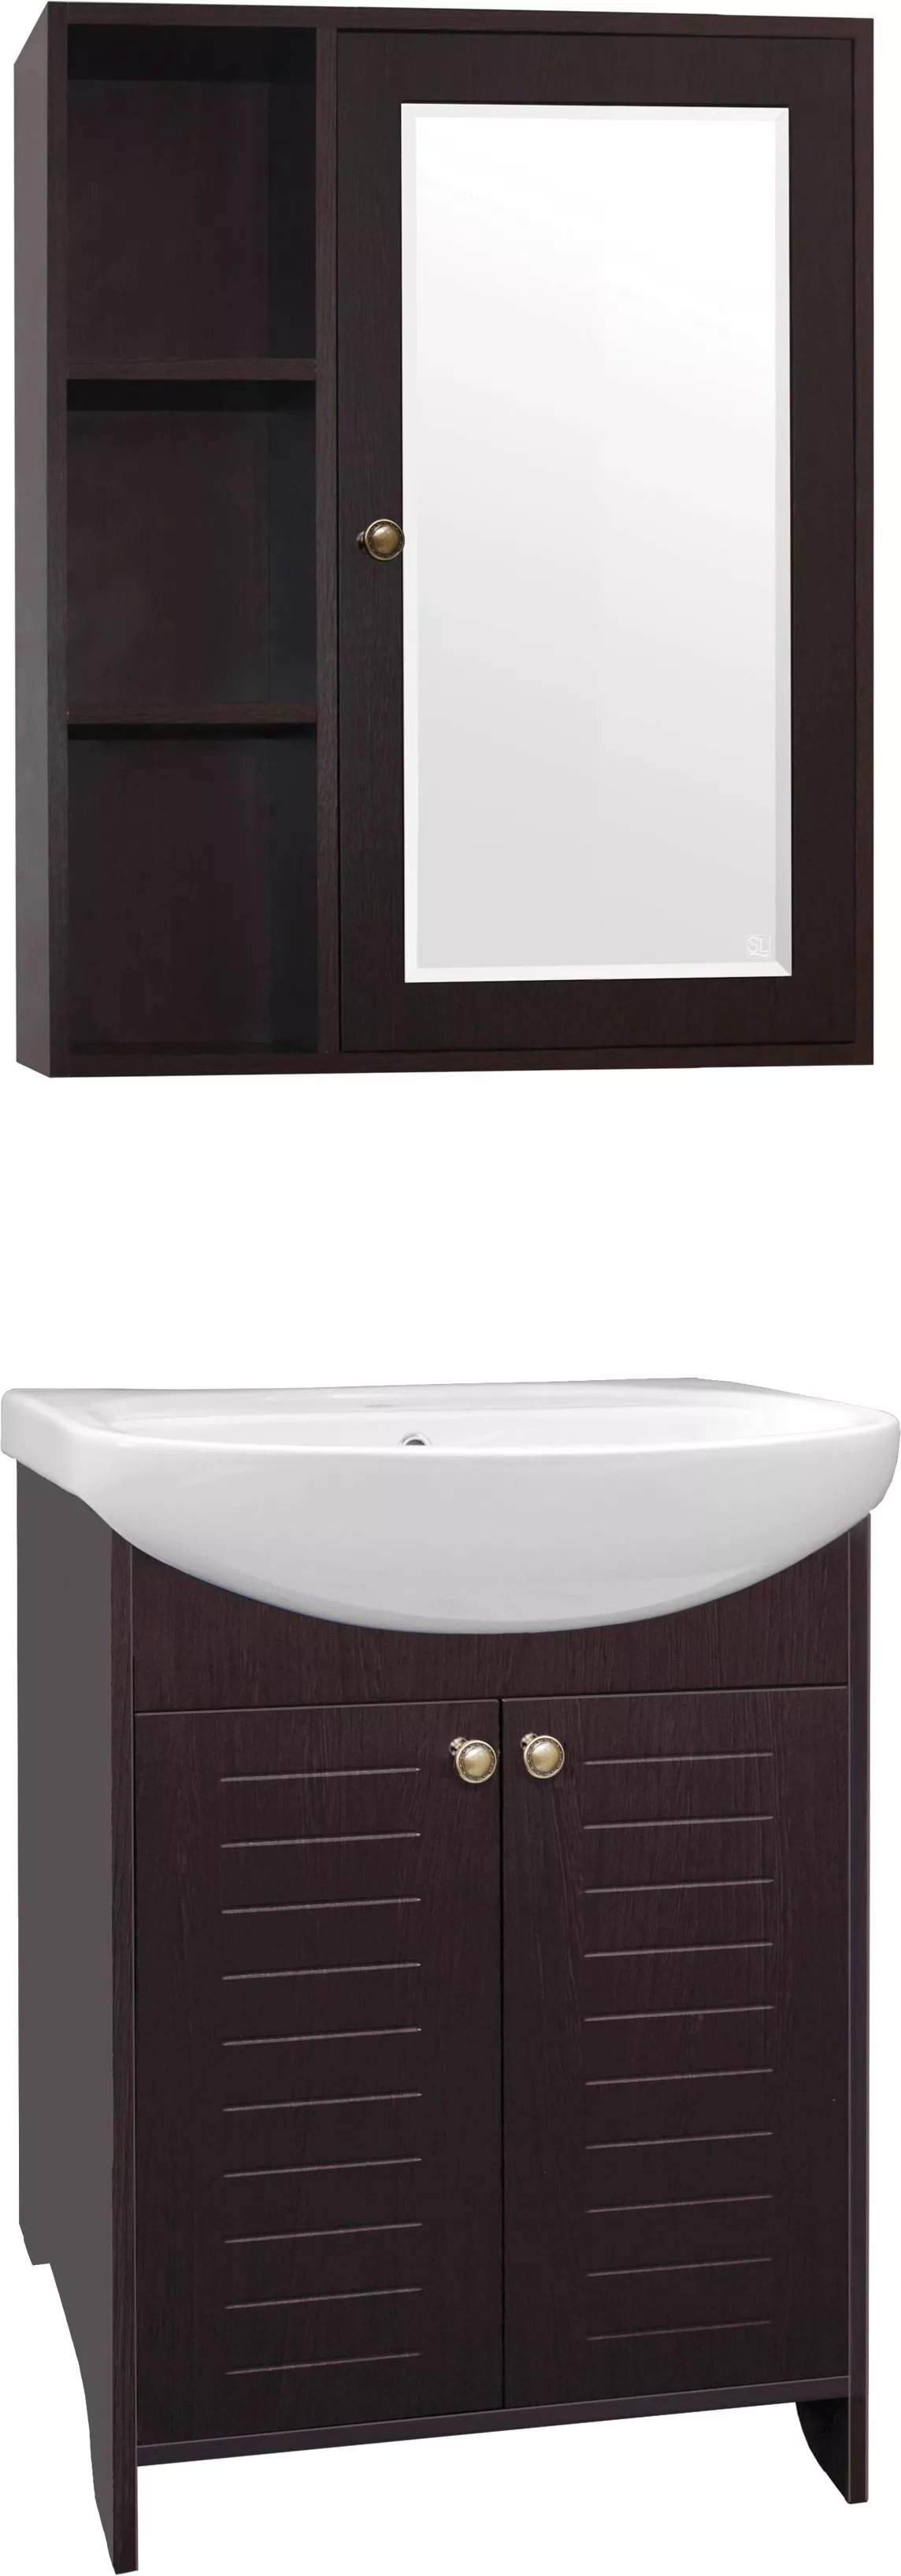 Мебель для ванной Style Line Кантри 65 венге, размер 65, цвет белый - фото 1